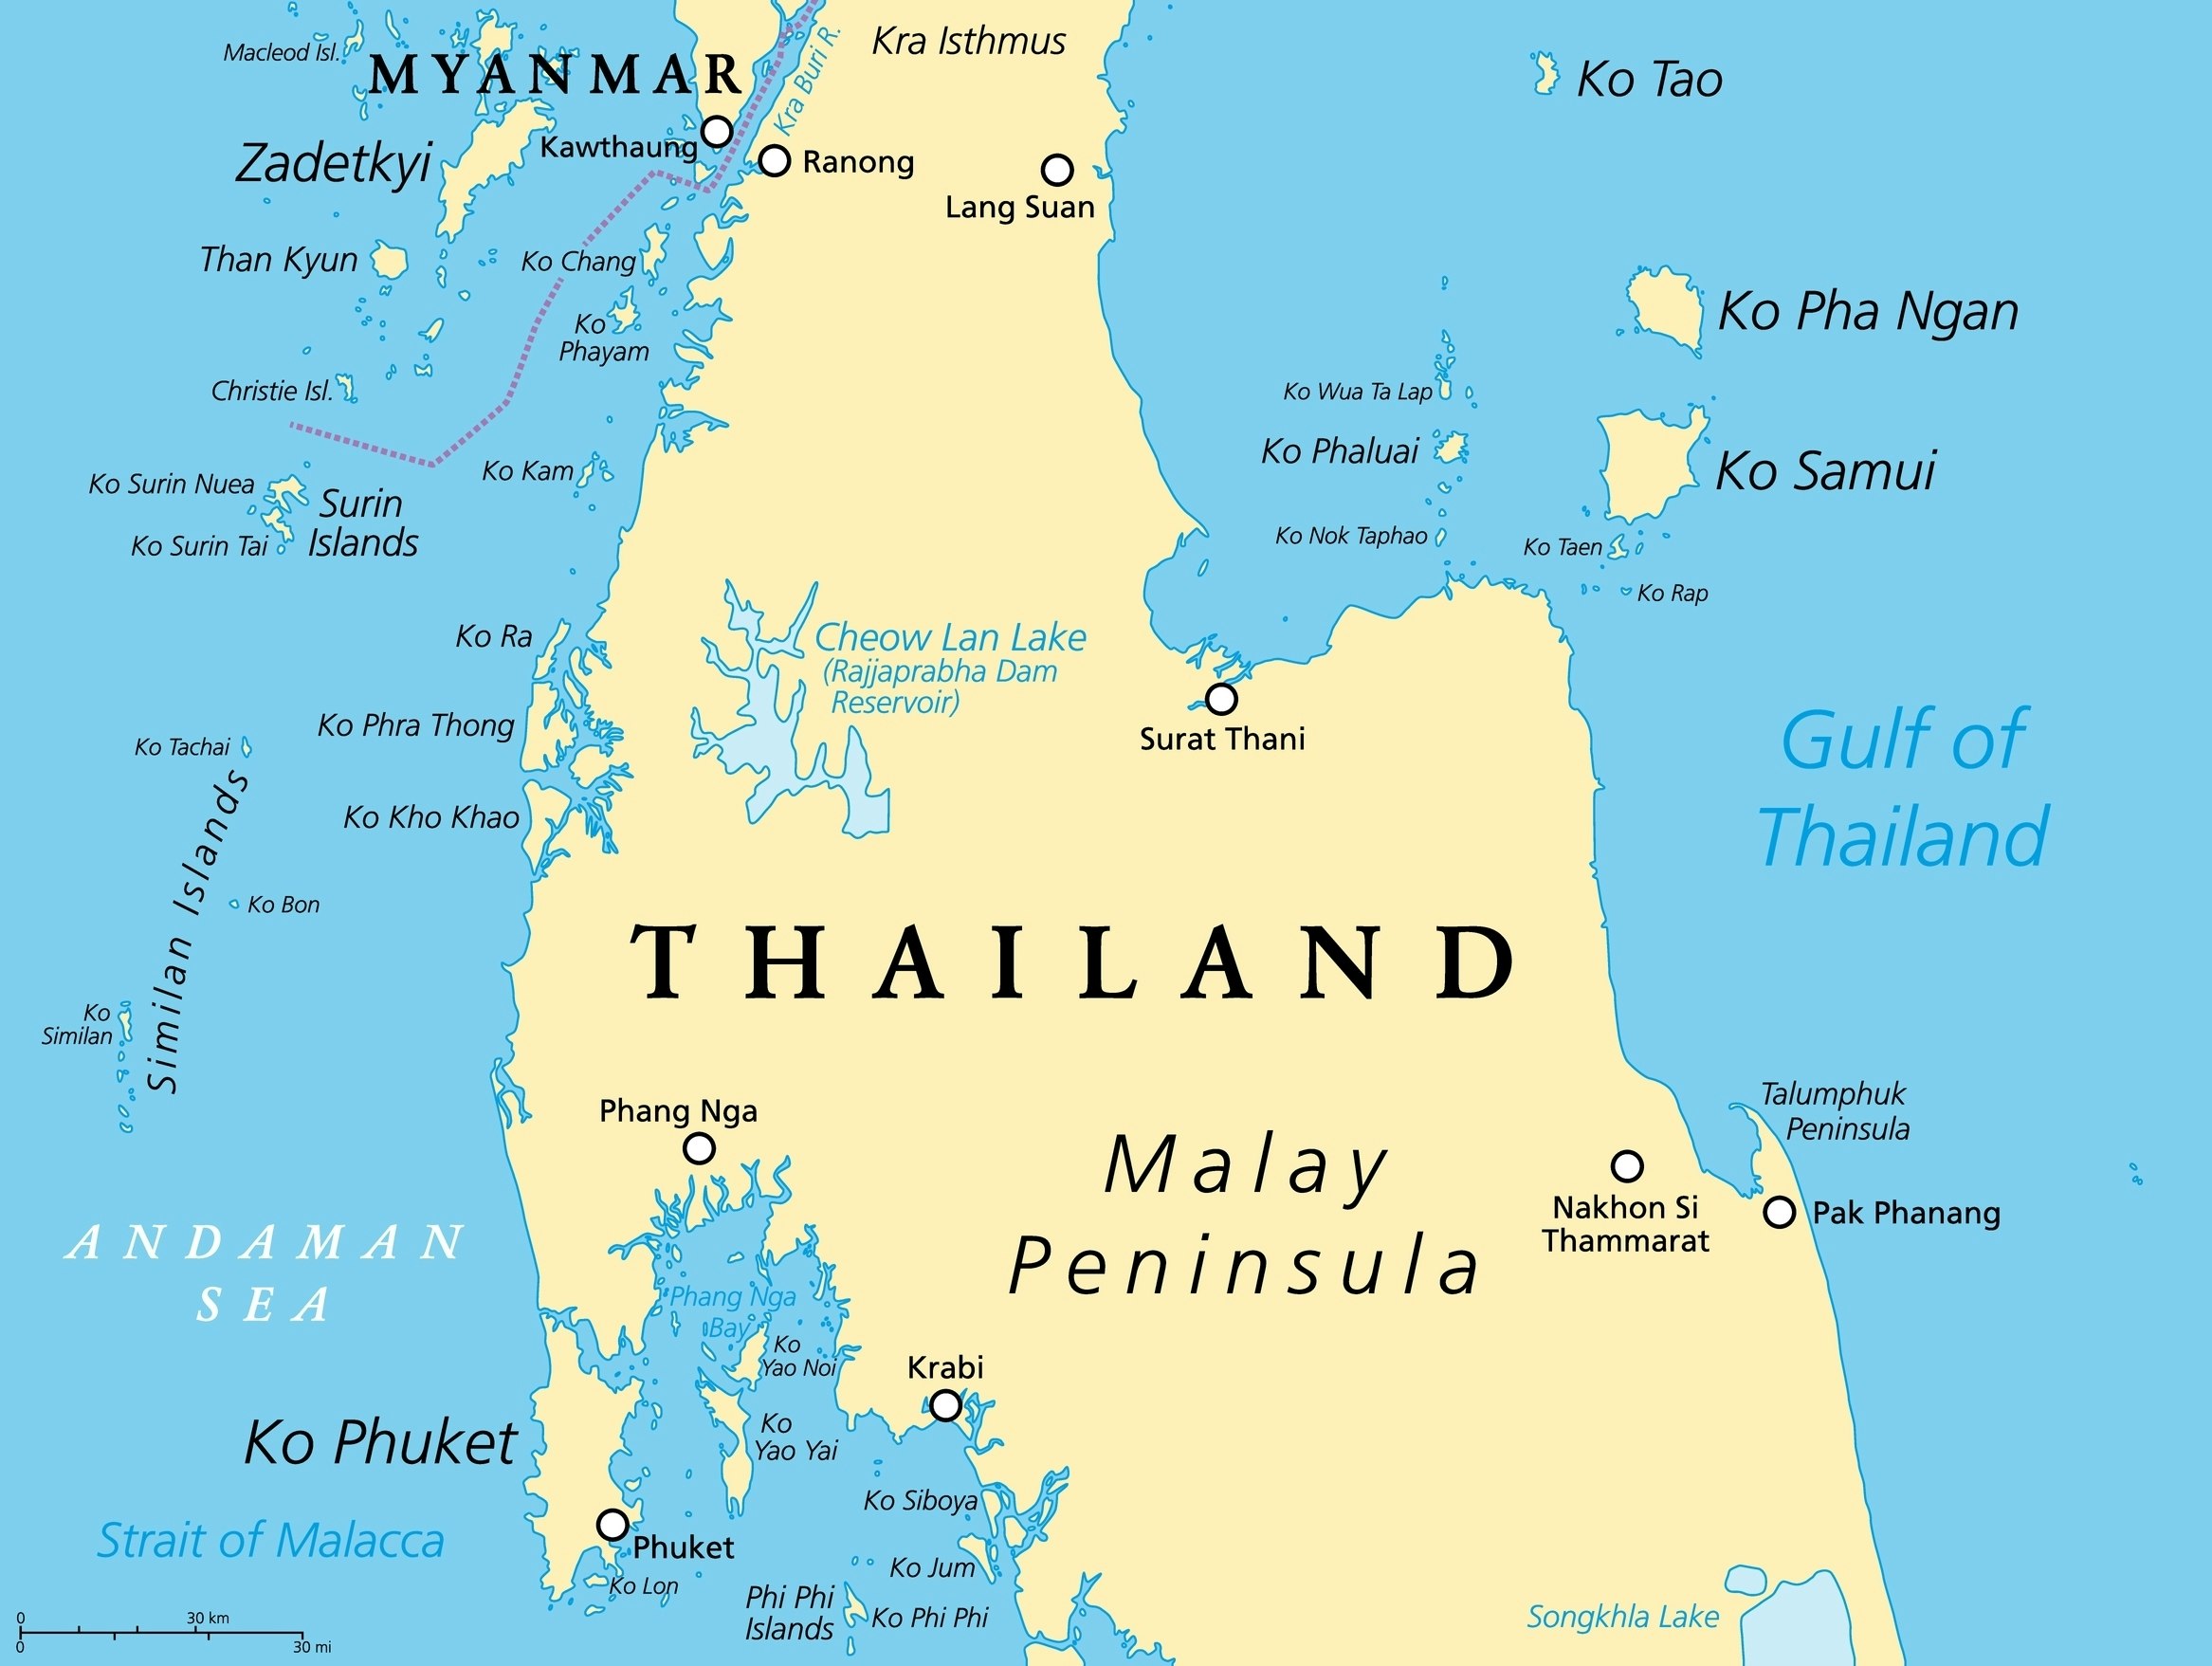 Kart over Thailand med de viktigste øyene og byene.